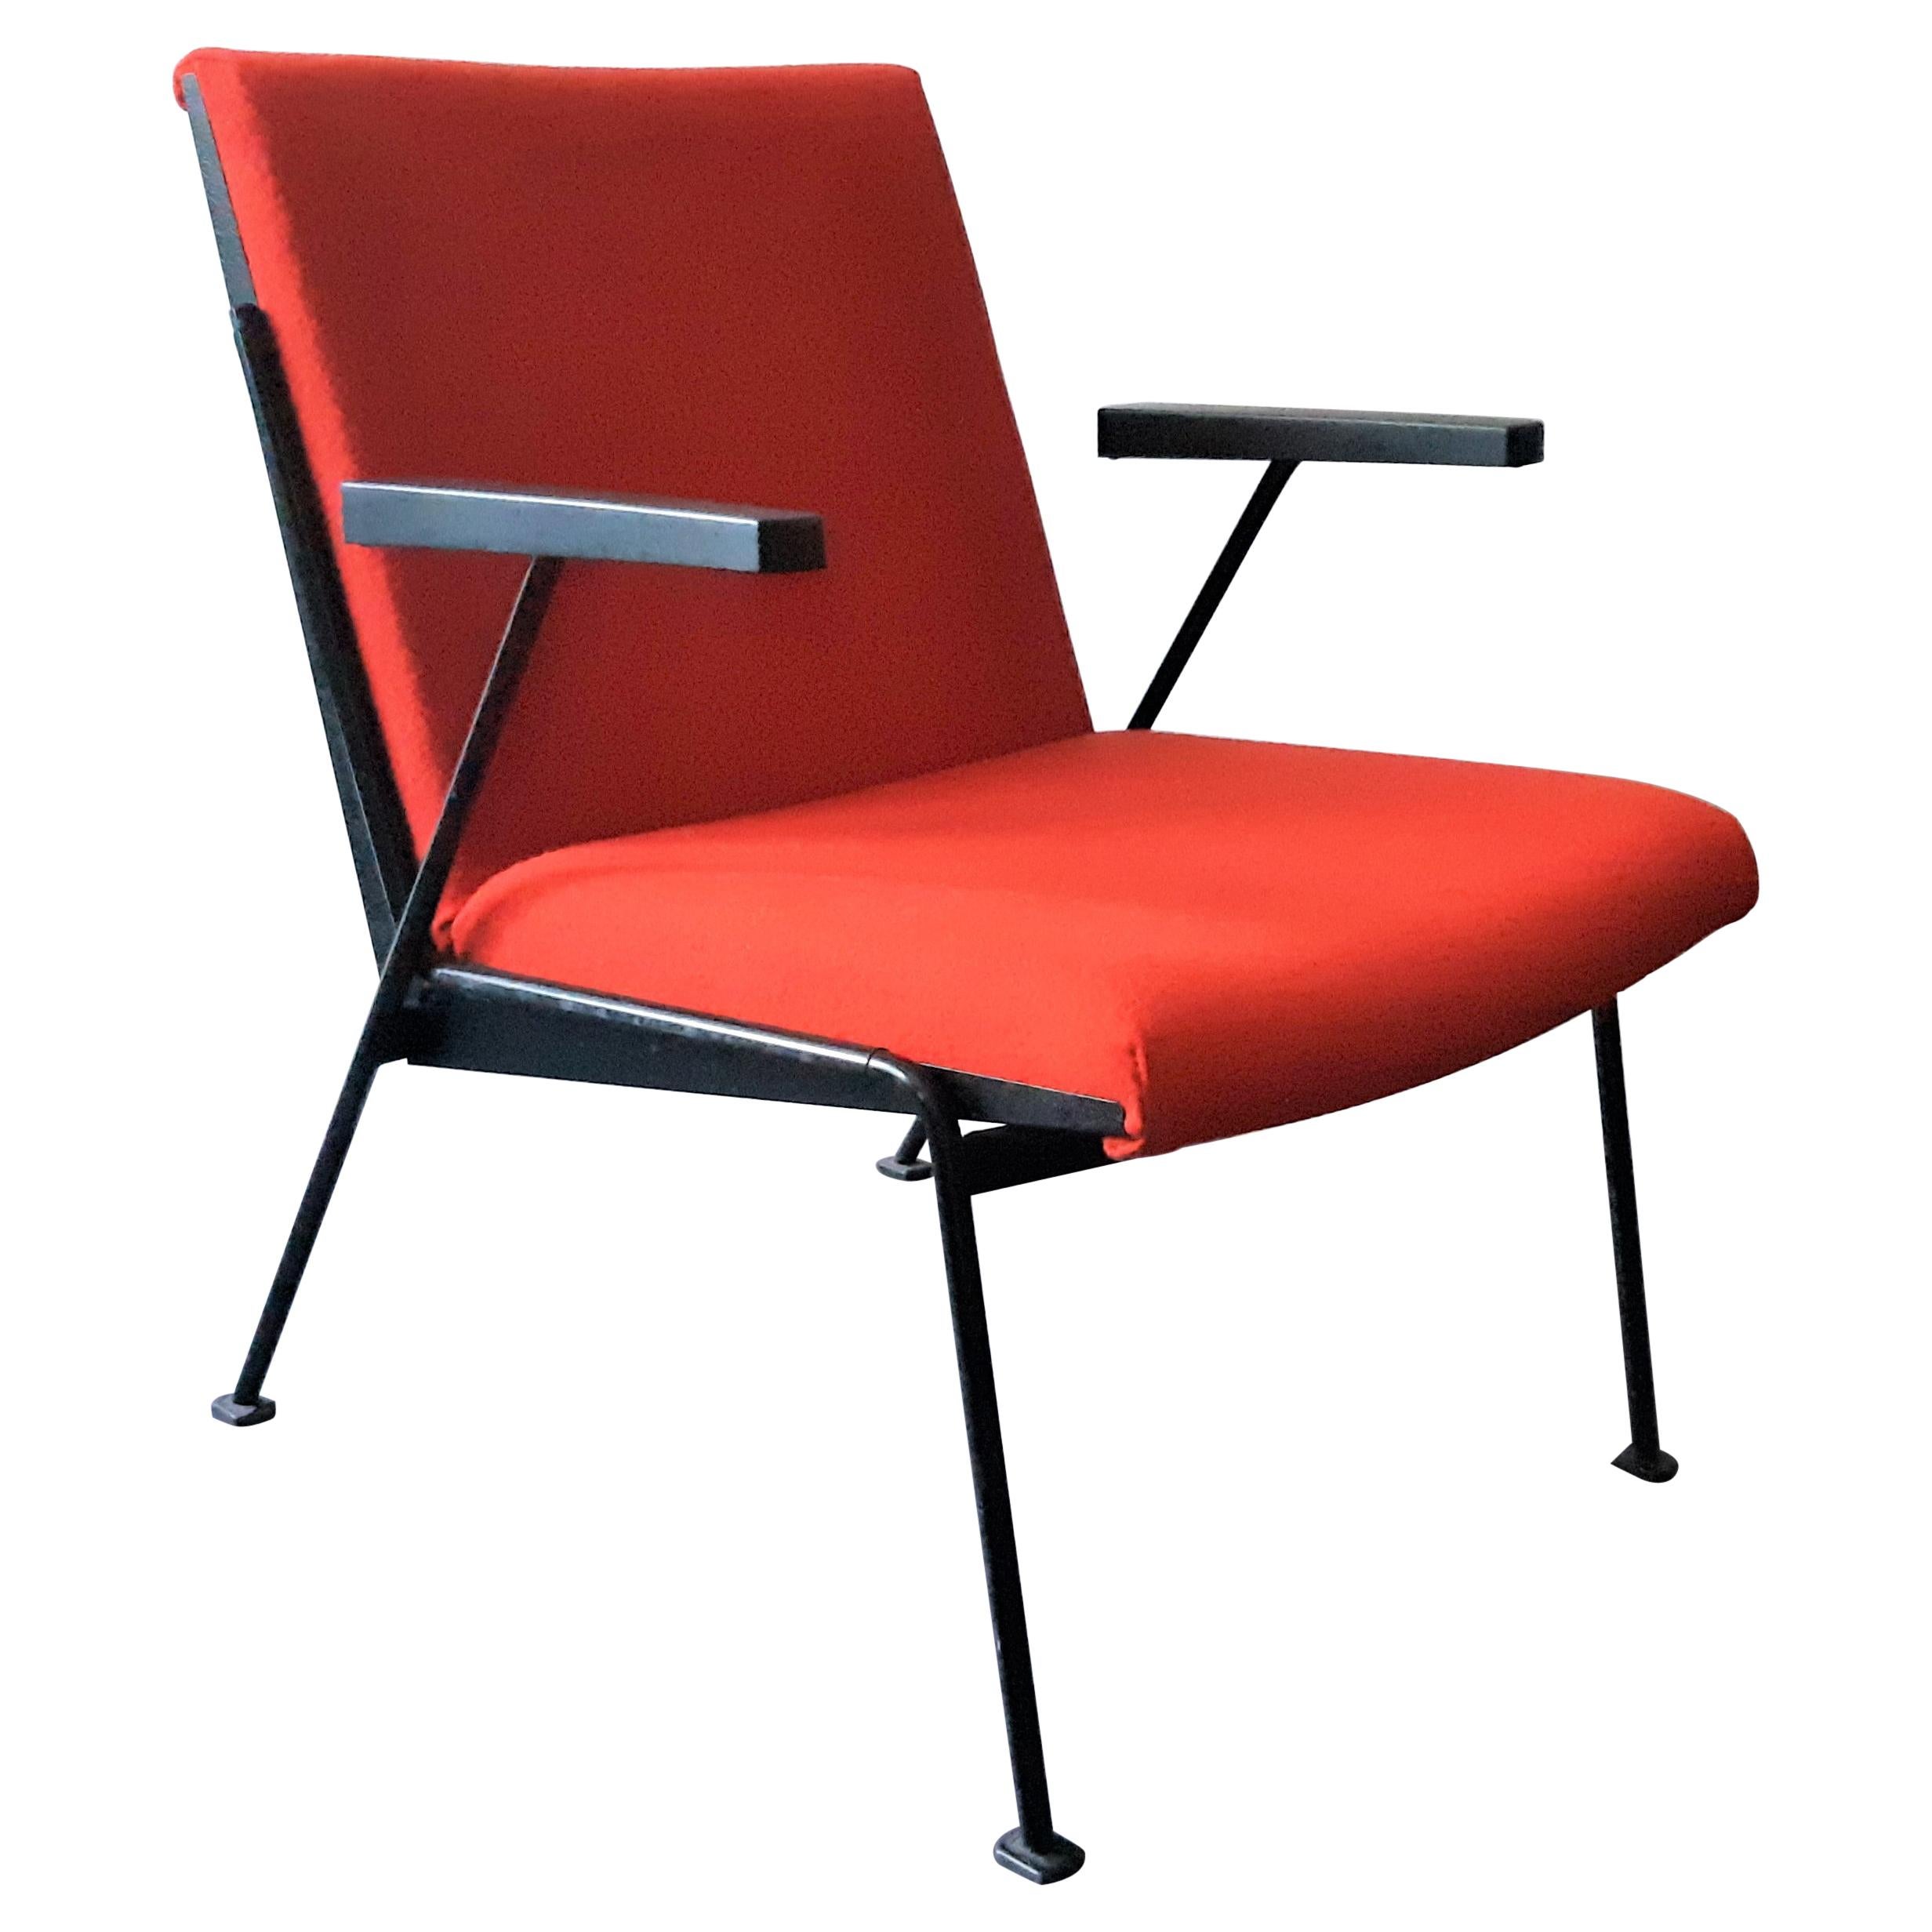 Roter Loungesessel „Oase“ mit Armlehnen von Wim Rietveld für Ahrend, 3 verfügbar